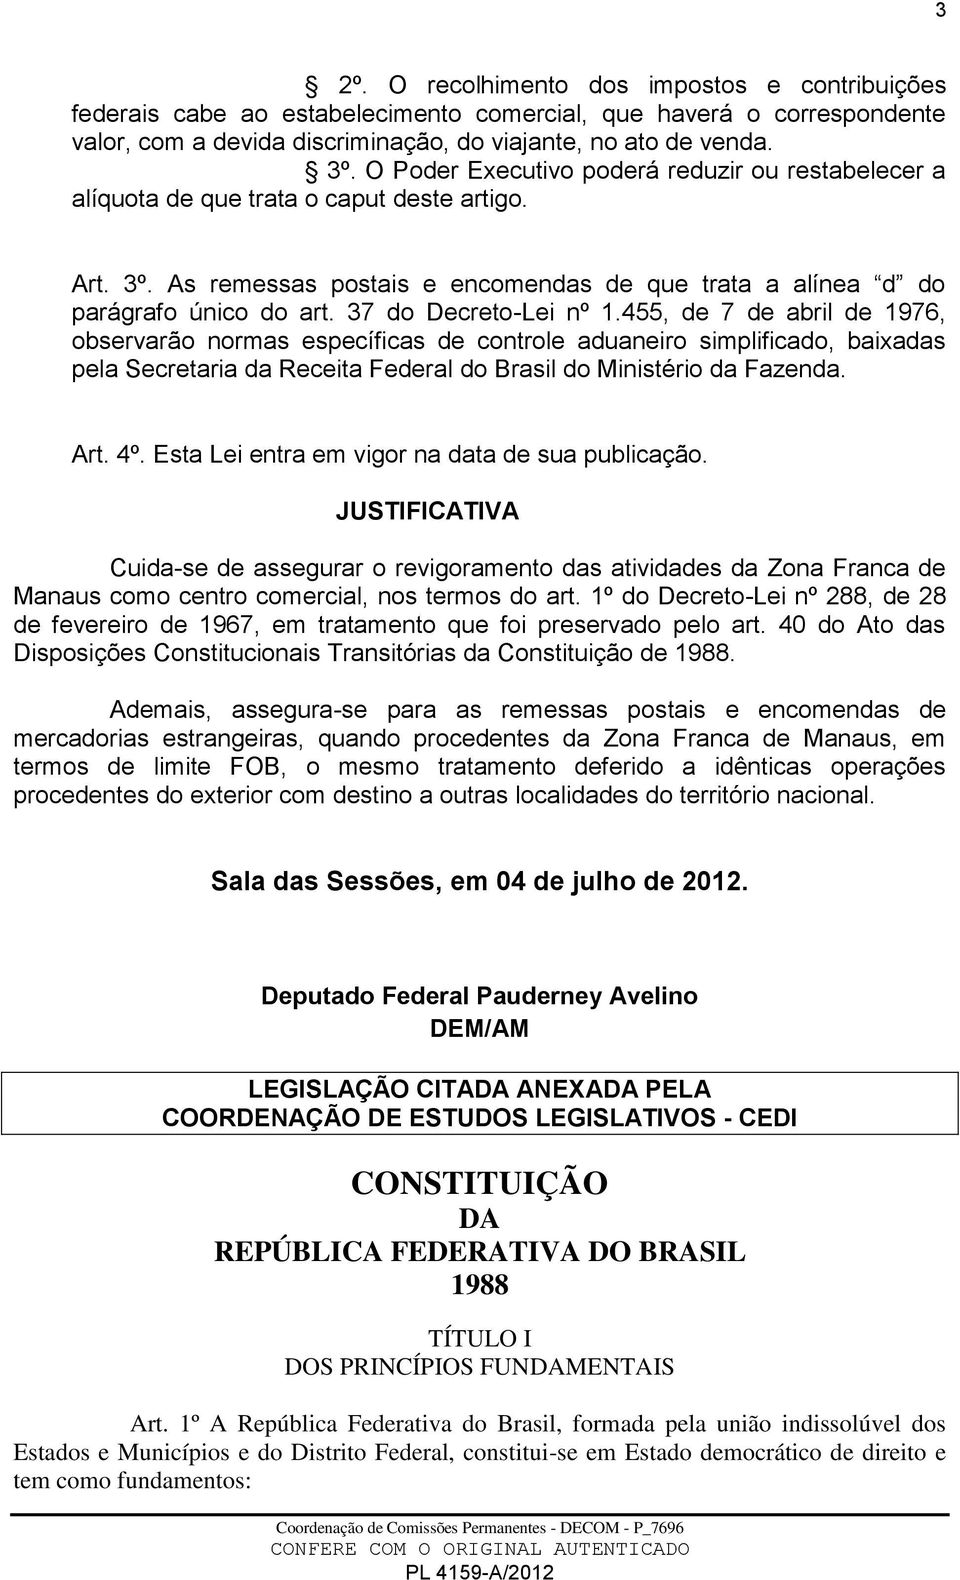 37 do Decreto-Lei nº 1.455, de 7 de abril de 1976, observarão normas específicas de controle aduaneiro simplificado, baixadas pela Secretaria da Receita Federal do Brasil do Ministério da Fazenda.